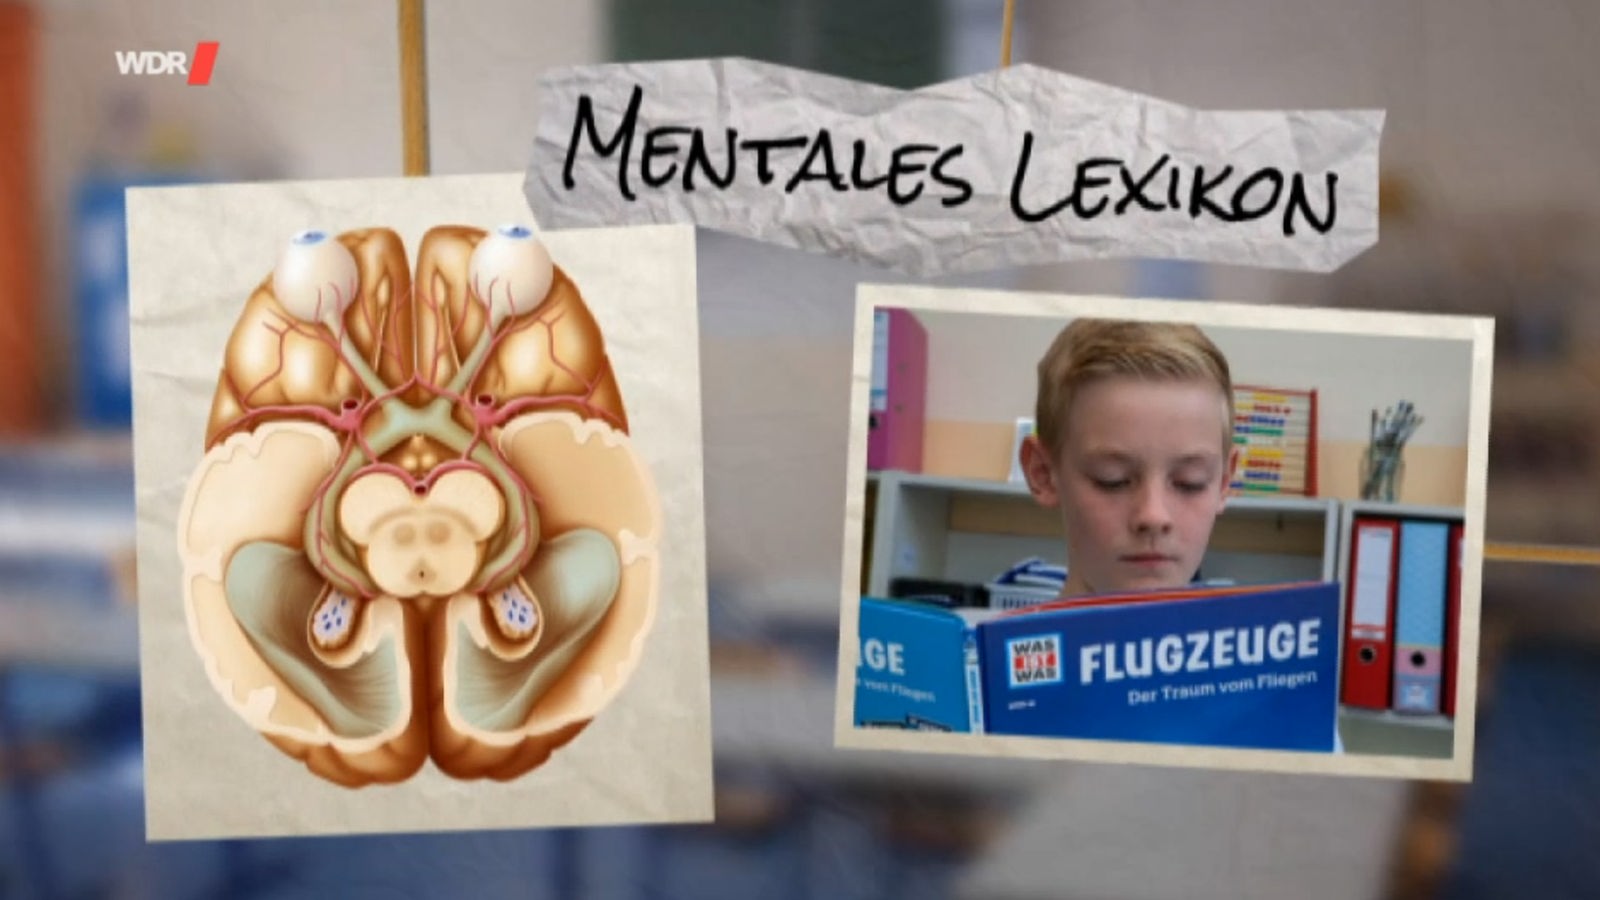 Ein Bild von einem Gehirn, ein Foto von einem Jungen mit Buch und der Schriftzug "Mentales Lexikon"